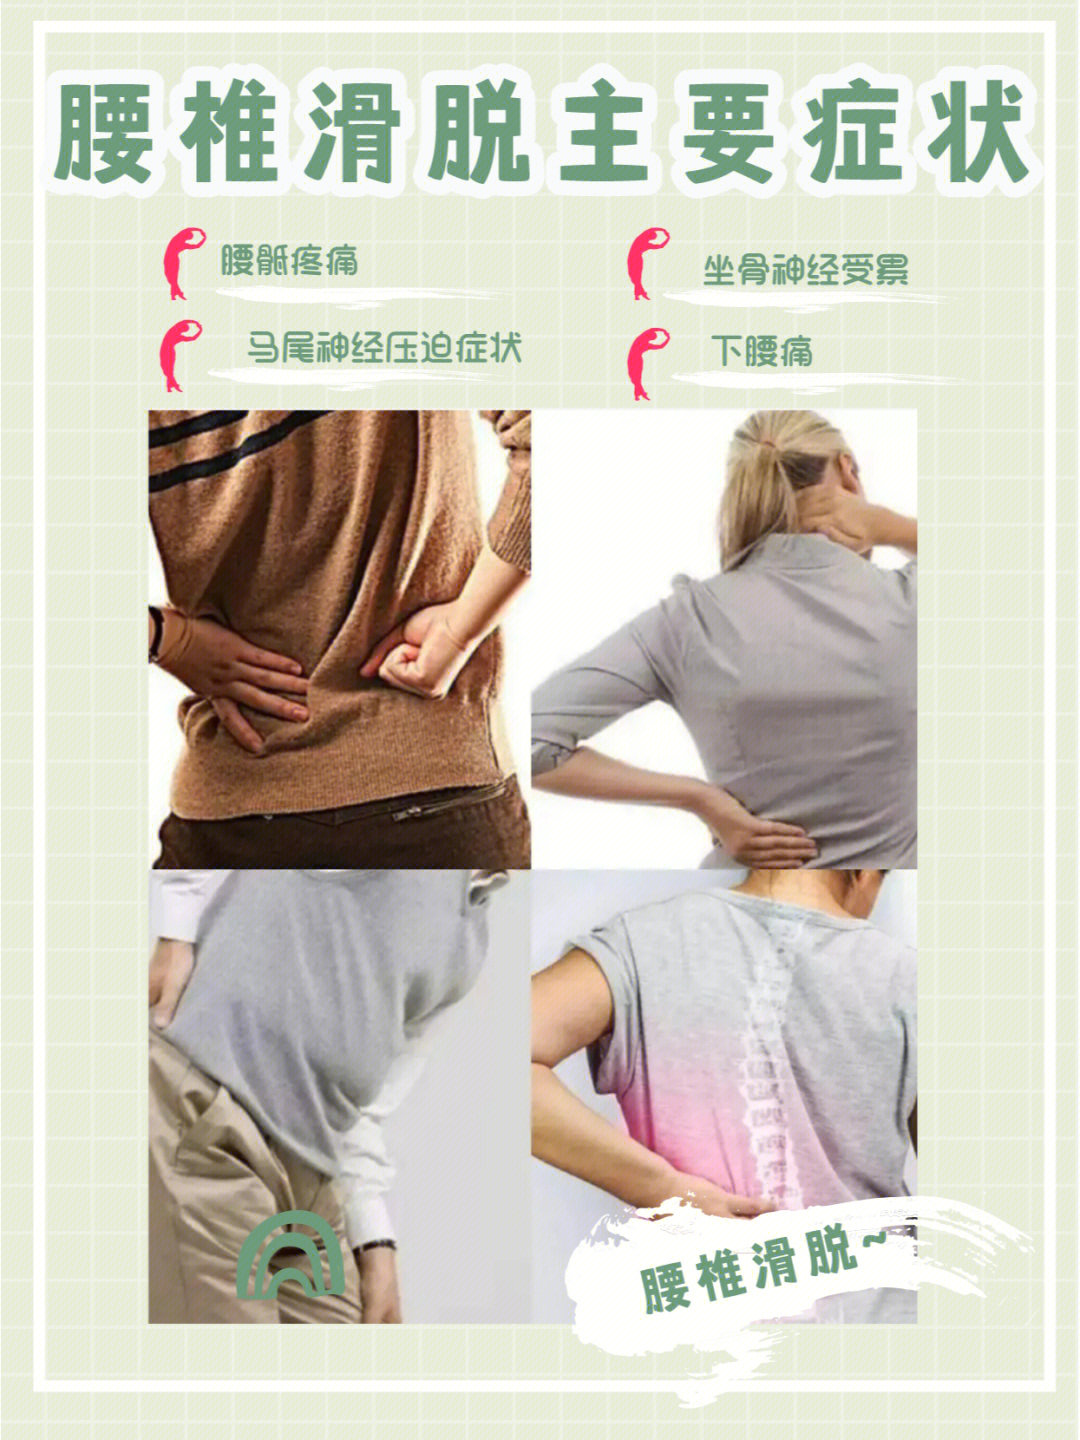 1)腰骶疼痛2)坐骨神经受累3)马尾神经受牵拉或受压迫症状4)下腰痛大